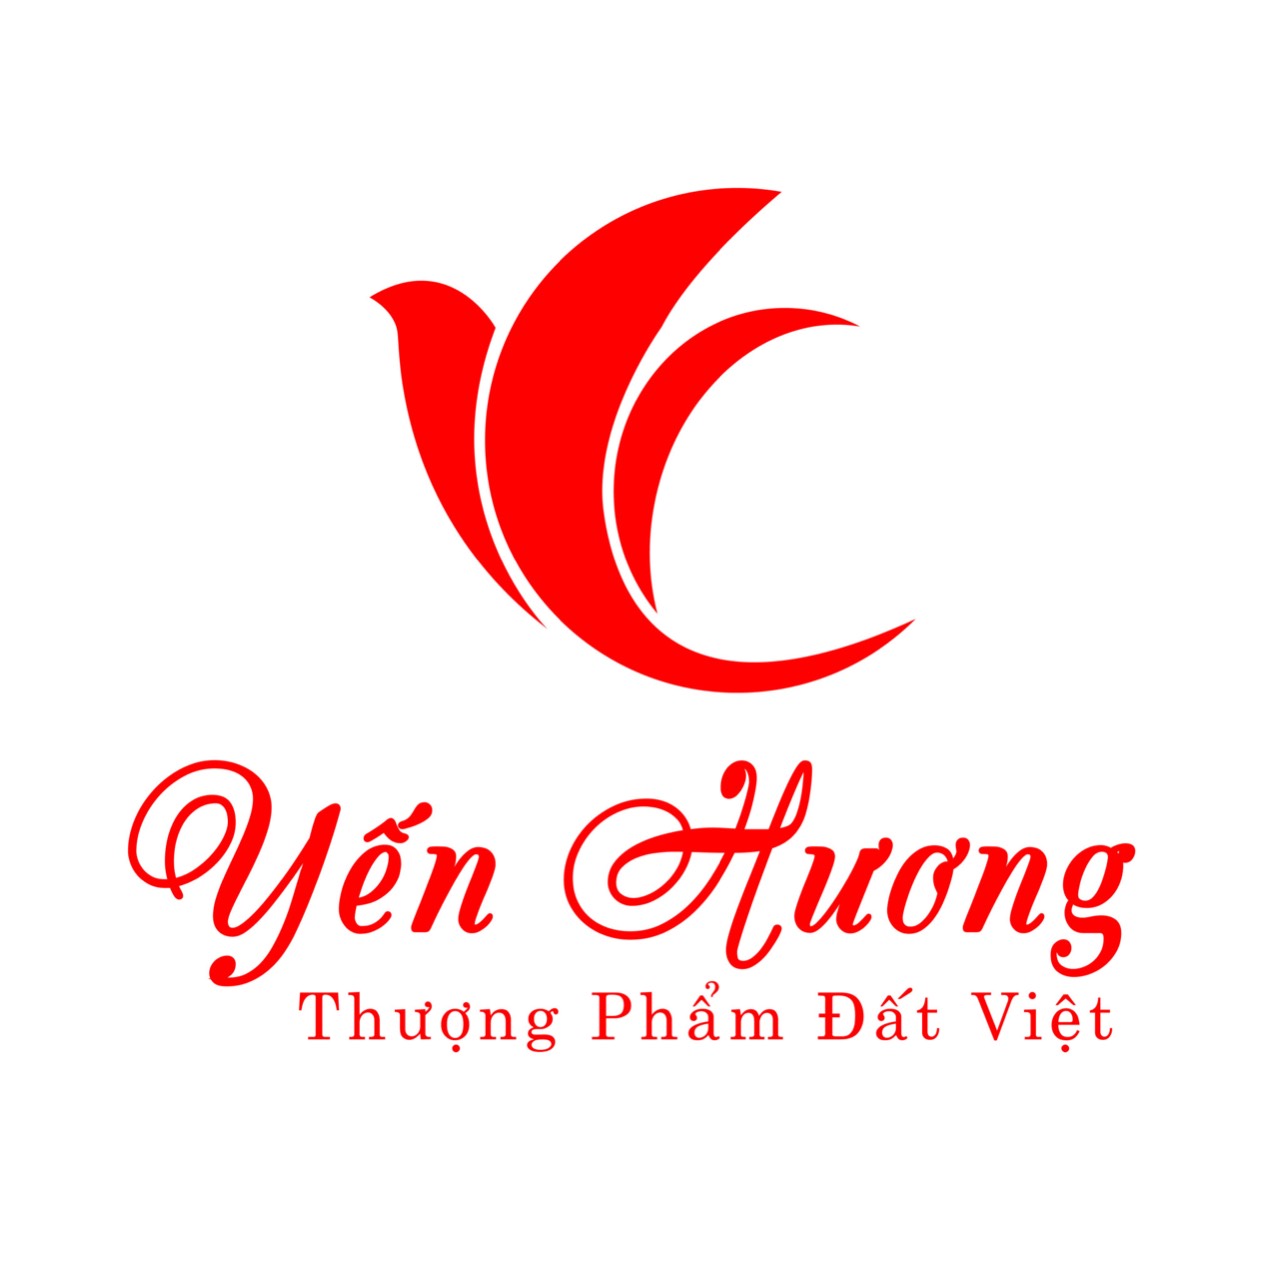 Yến Hương thượng phẩm Đất Việt